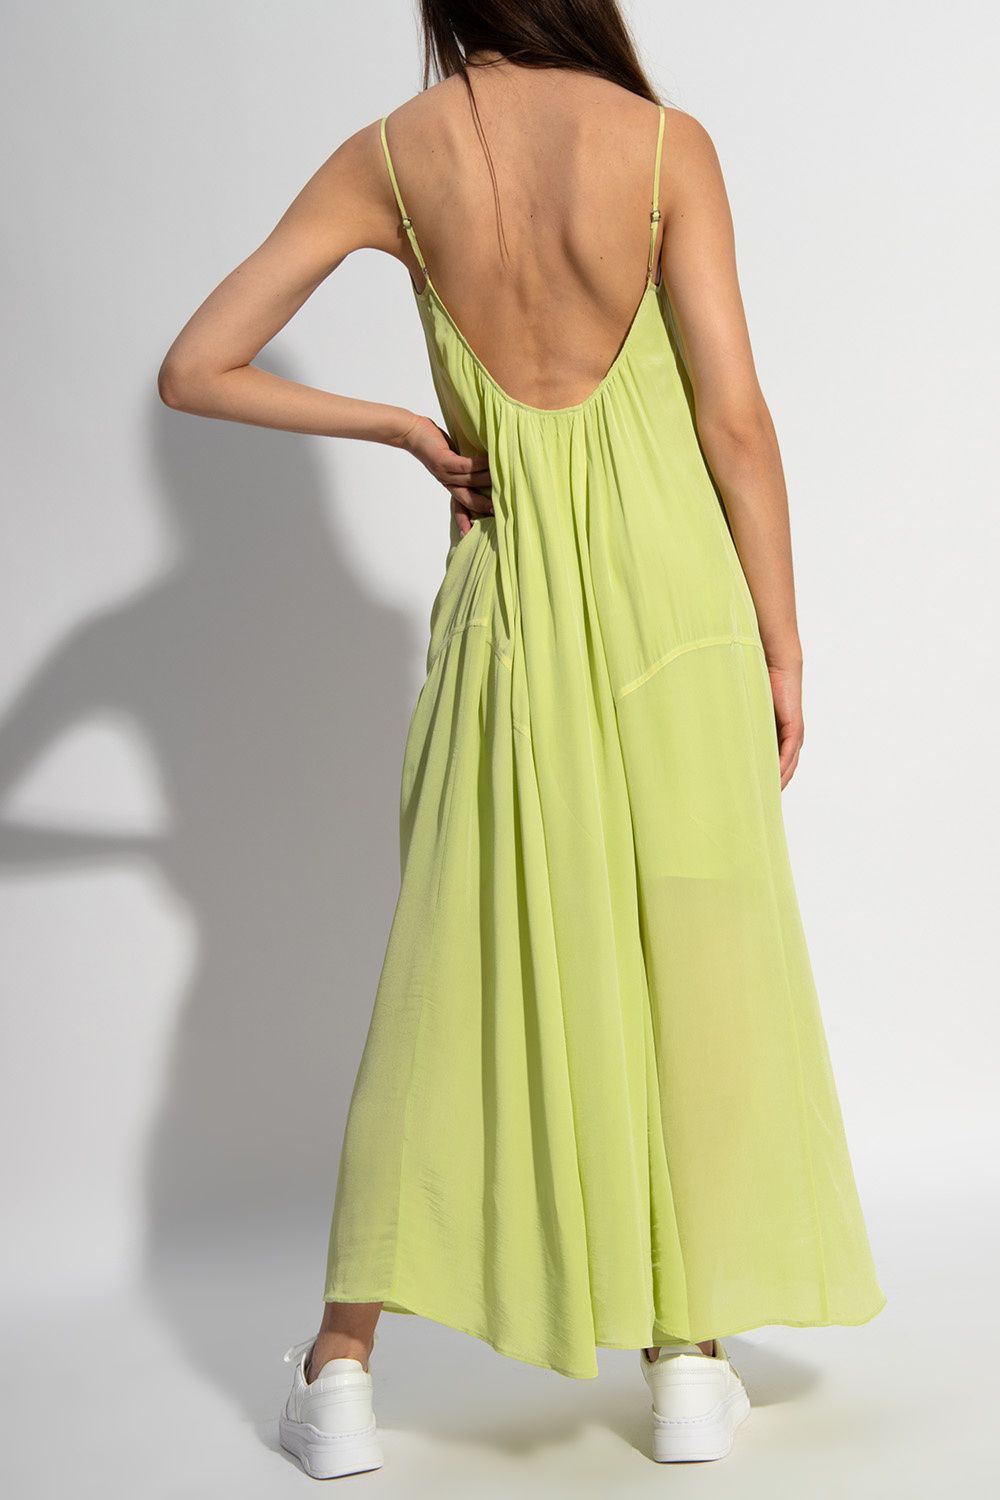 AllSaints ‘Amor’ sleeveless dress